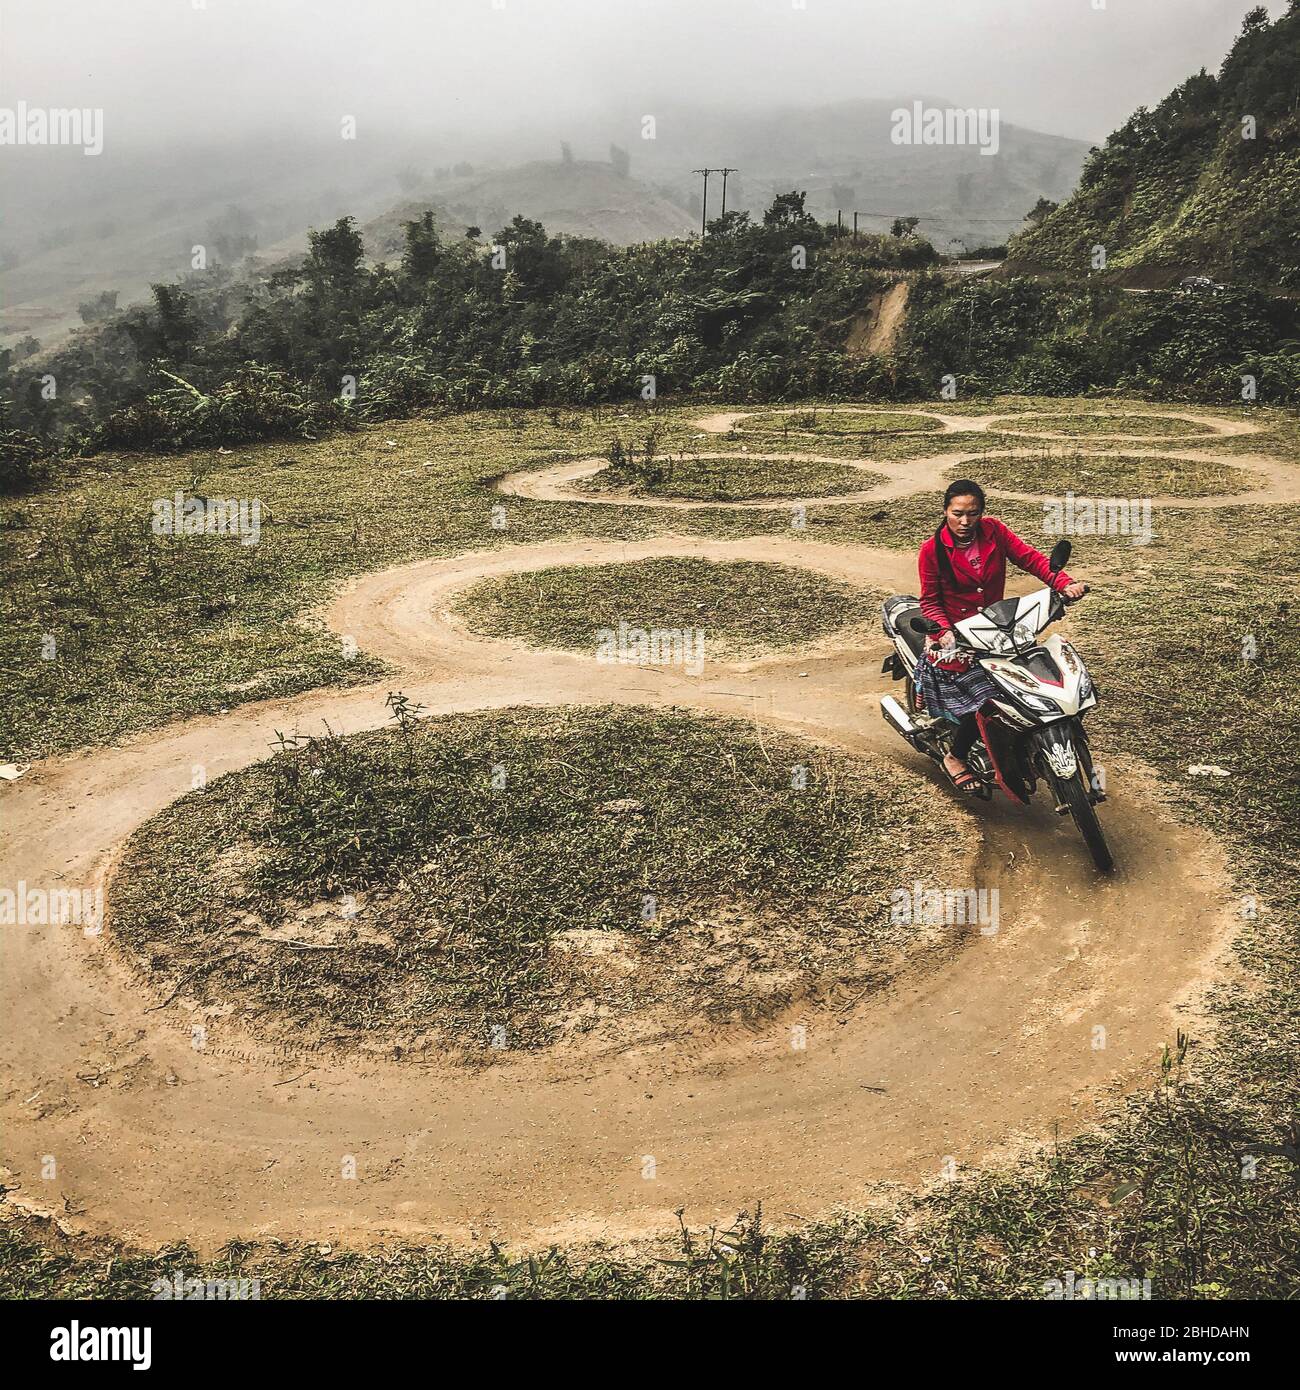 Motorrad fahren lernen -Fotos und -Bildmaterial in hoher Auflösung – Alamy